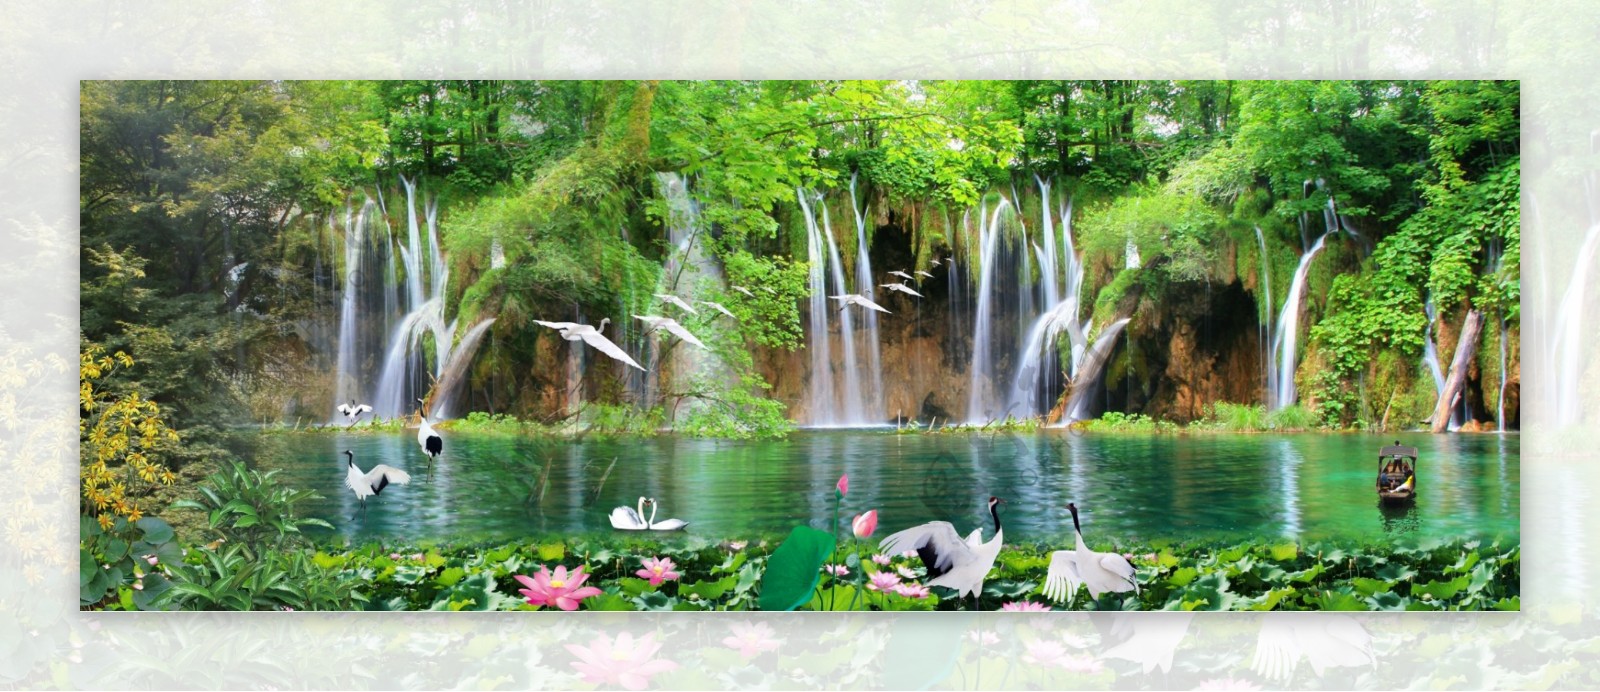 山水瀑布自然风景图片